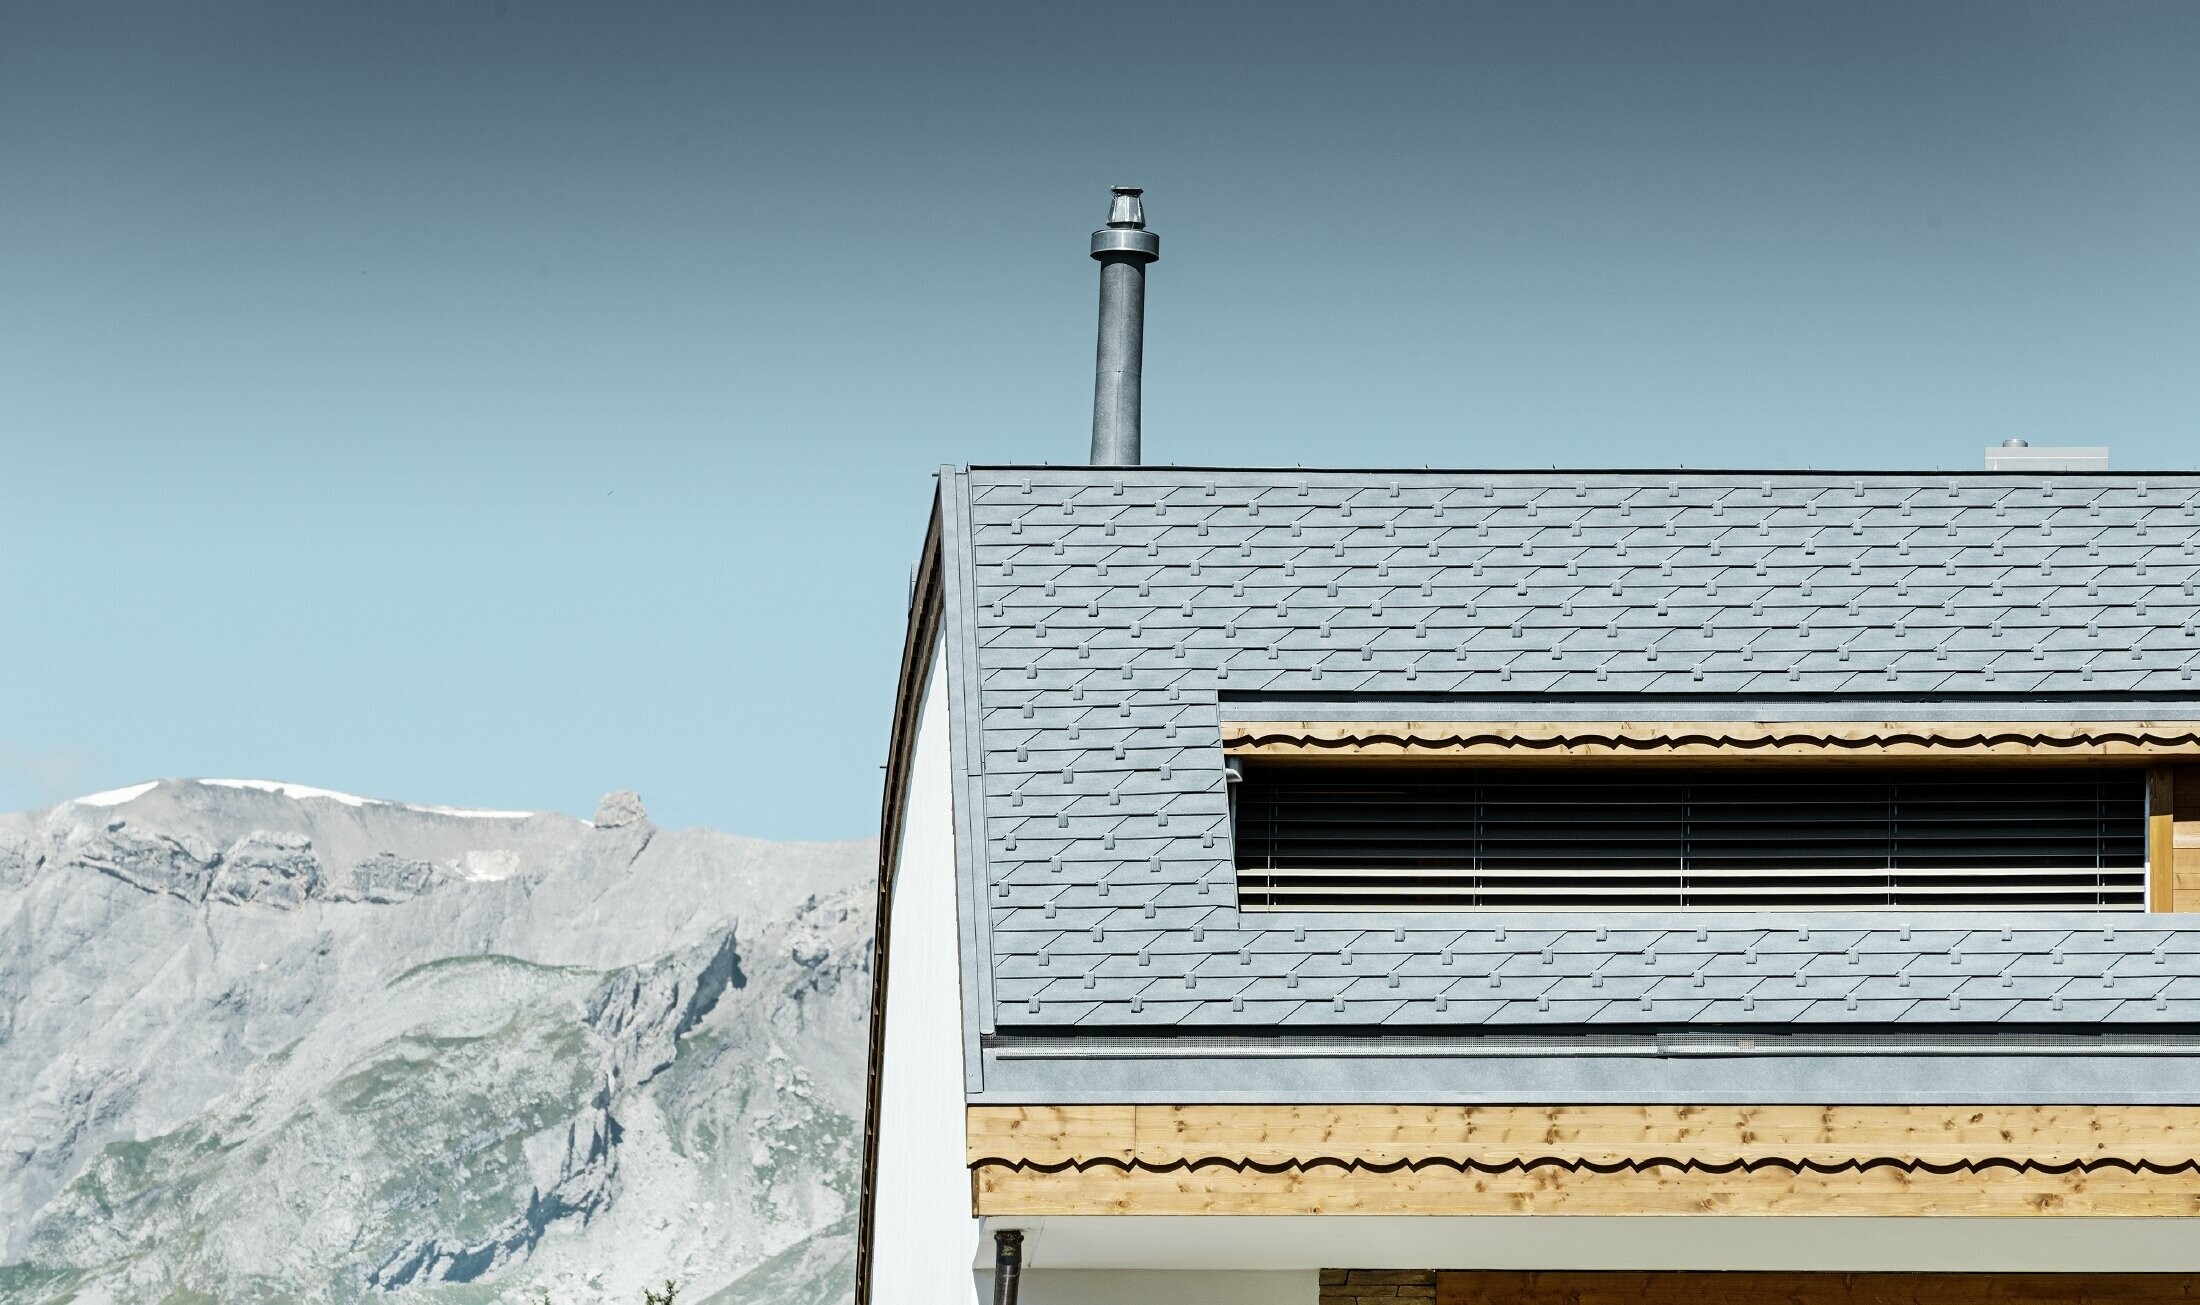 Meergezinswoning in Crans Montana (Zwitserland) met de bergen als decor, een gevel met speelse houten elementen en een dakbedekking bestaande uit aluminium PREFA-dakschindels in steengrijs